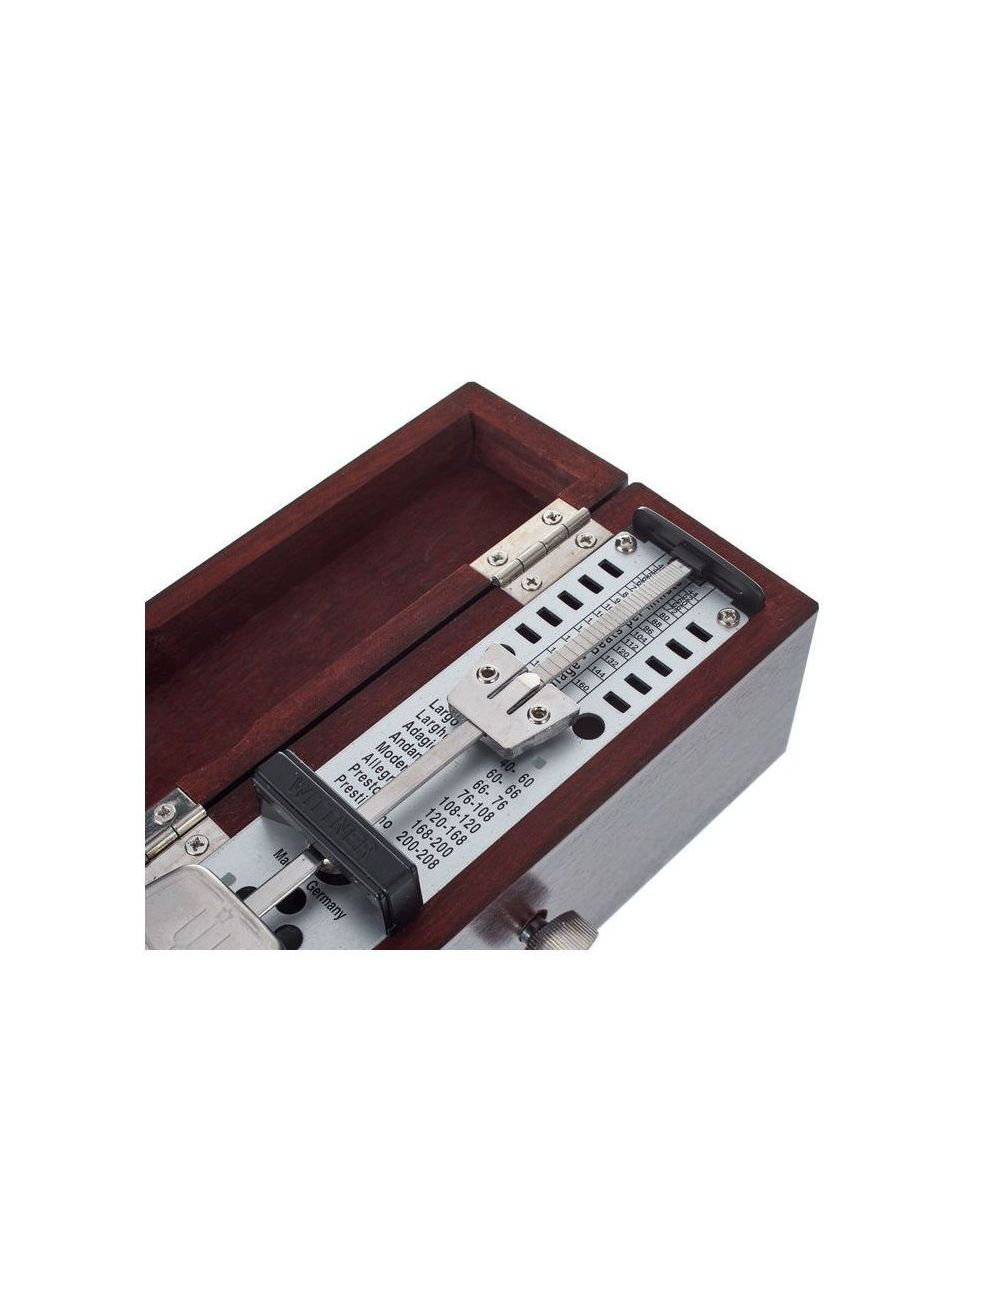 Wittner Taktell SUPER MINI 880.2 metronome in solid wood Taktell SUPER MINI 880210 tuners and metronomes